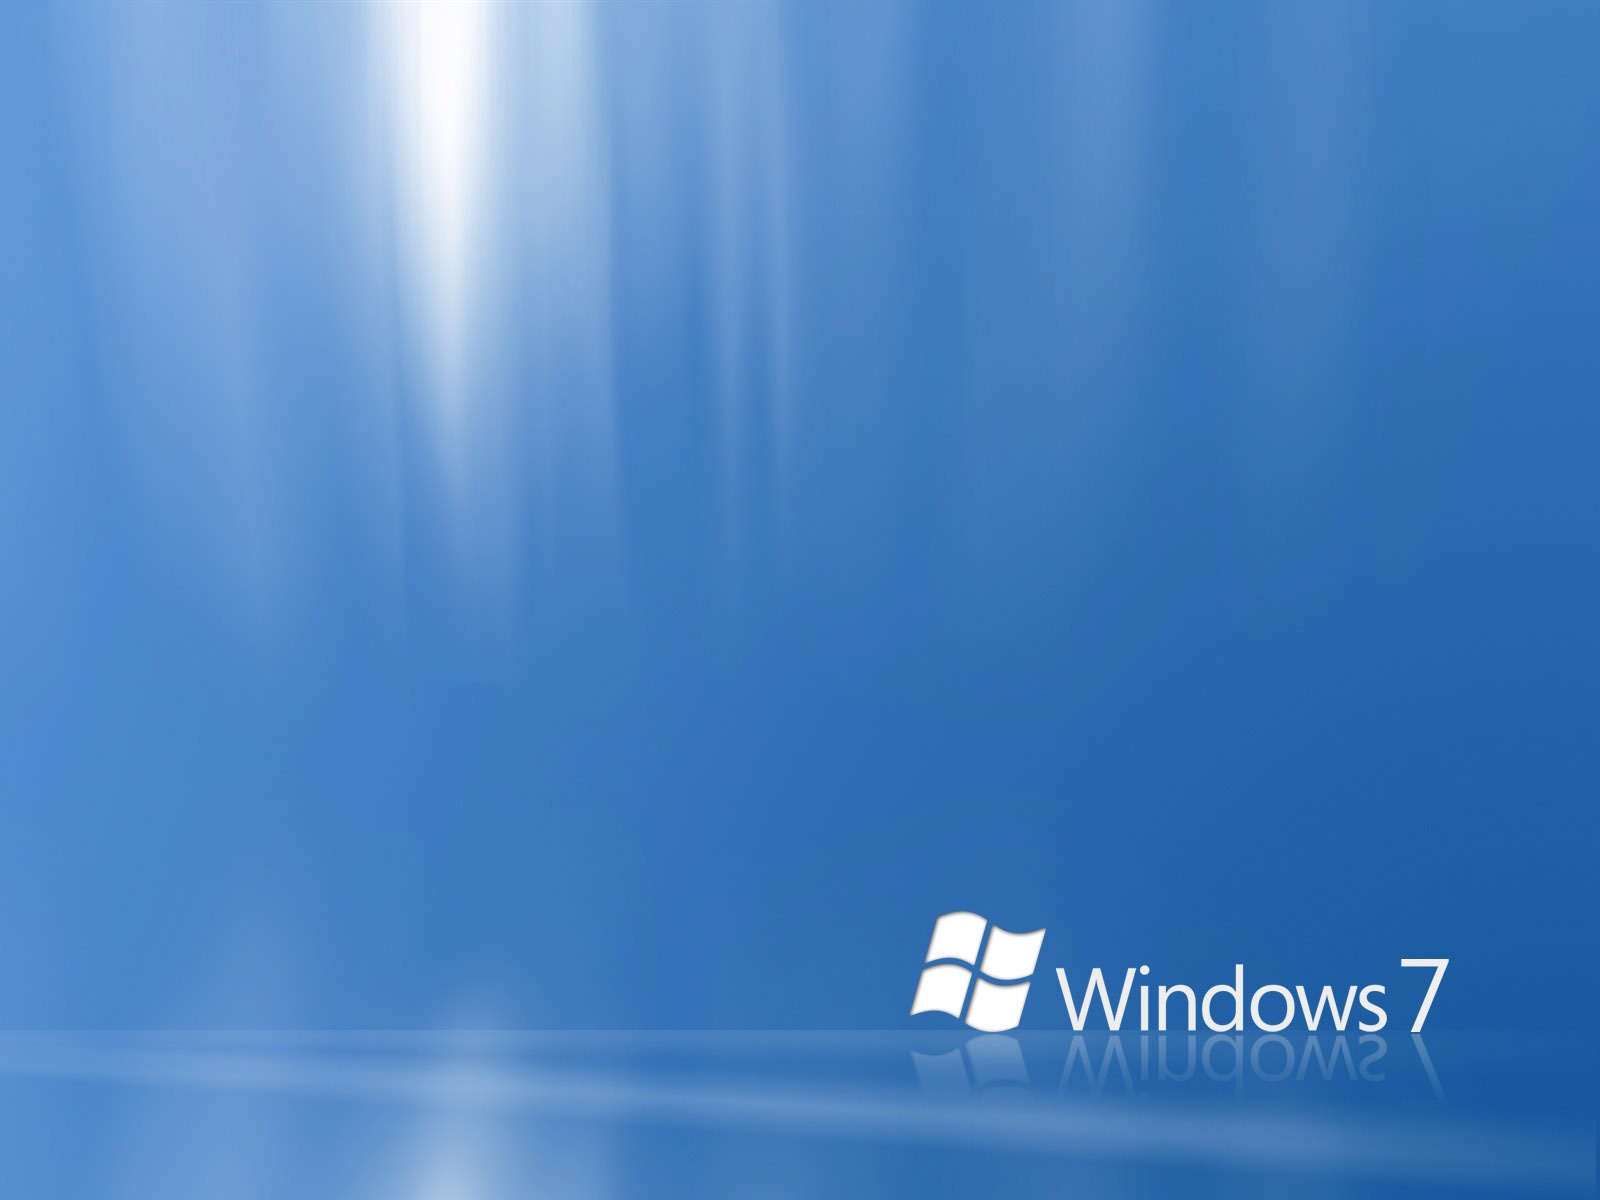 Windows7 theme wallpaper (2) #23 - 1600x1200